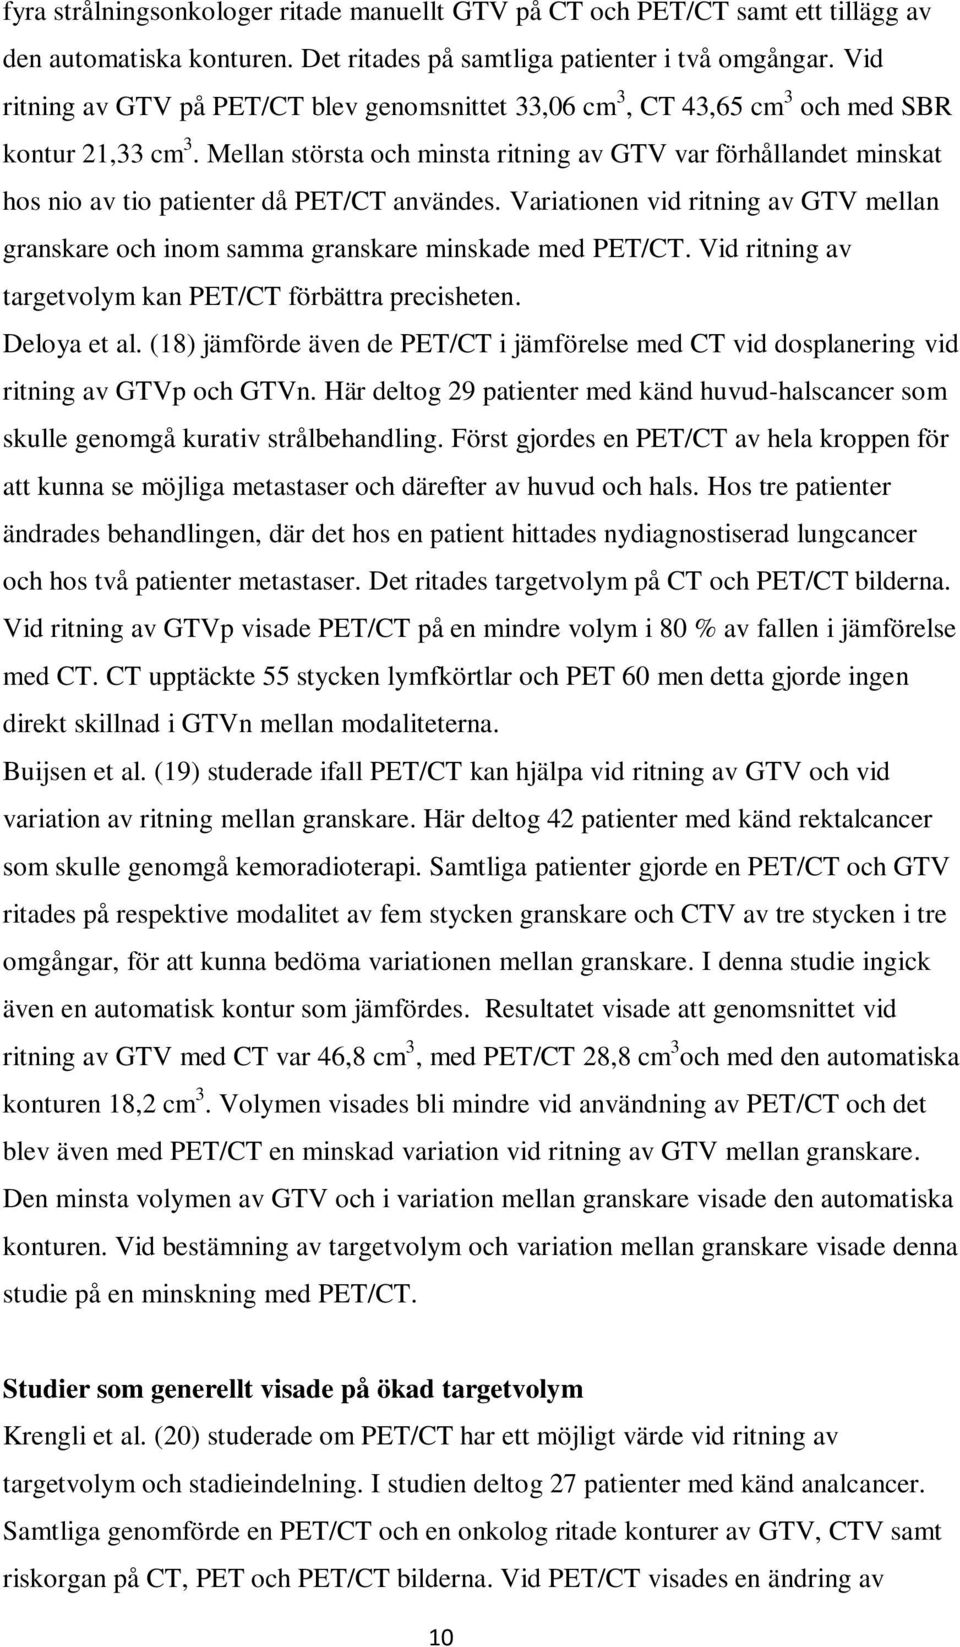 Mellan största och minsta ritning av GTV var förhållandet minskat hos nio av tio patienter då PET/CT användes.